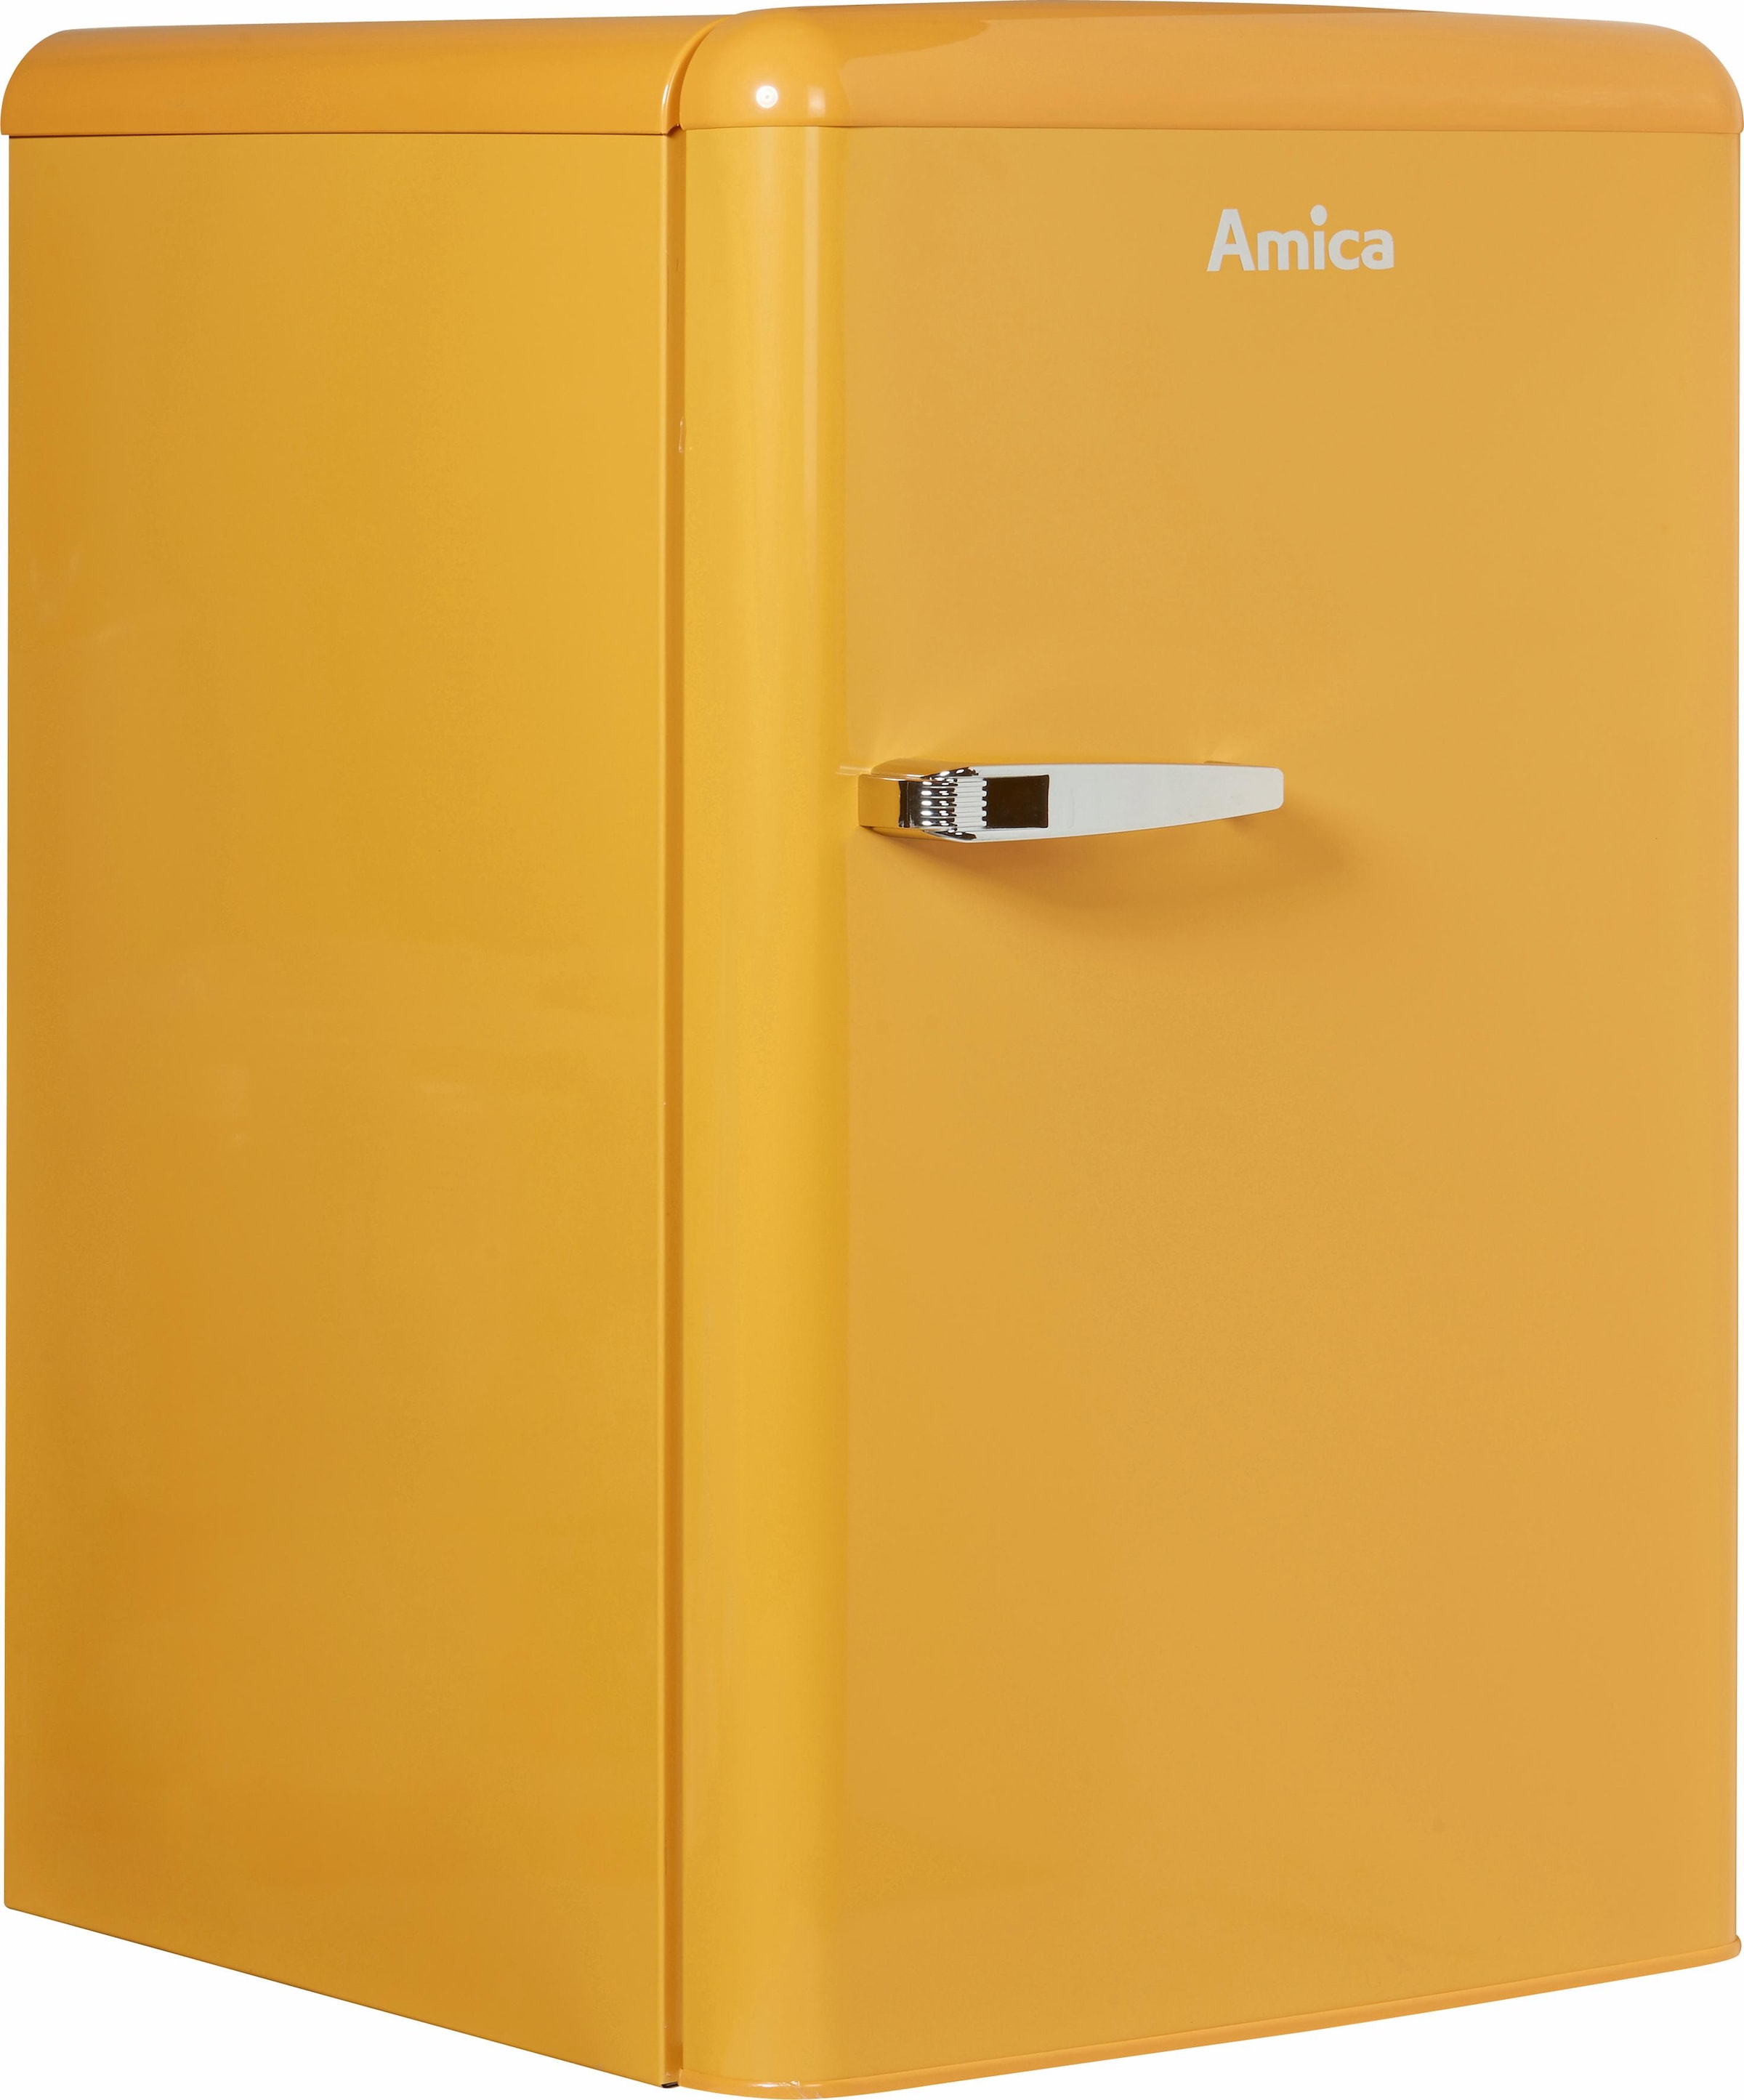 Amica Table Top Kühlschrank, KS 15611 R, 86 cm hoch, 55 cm breit online  kaufen